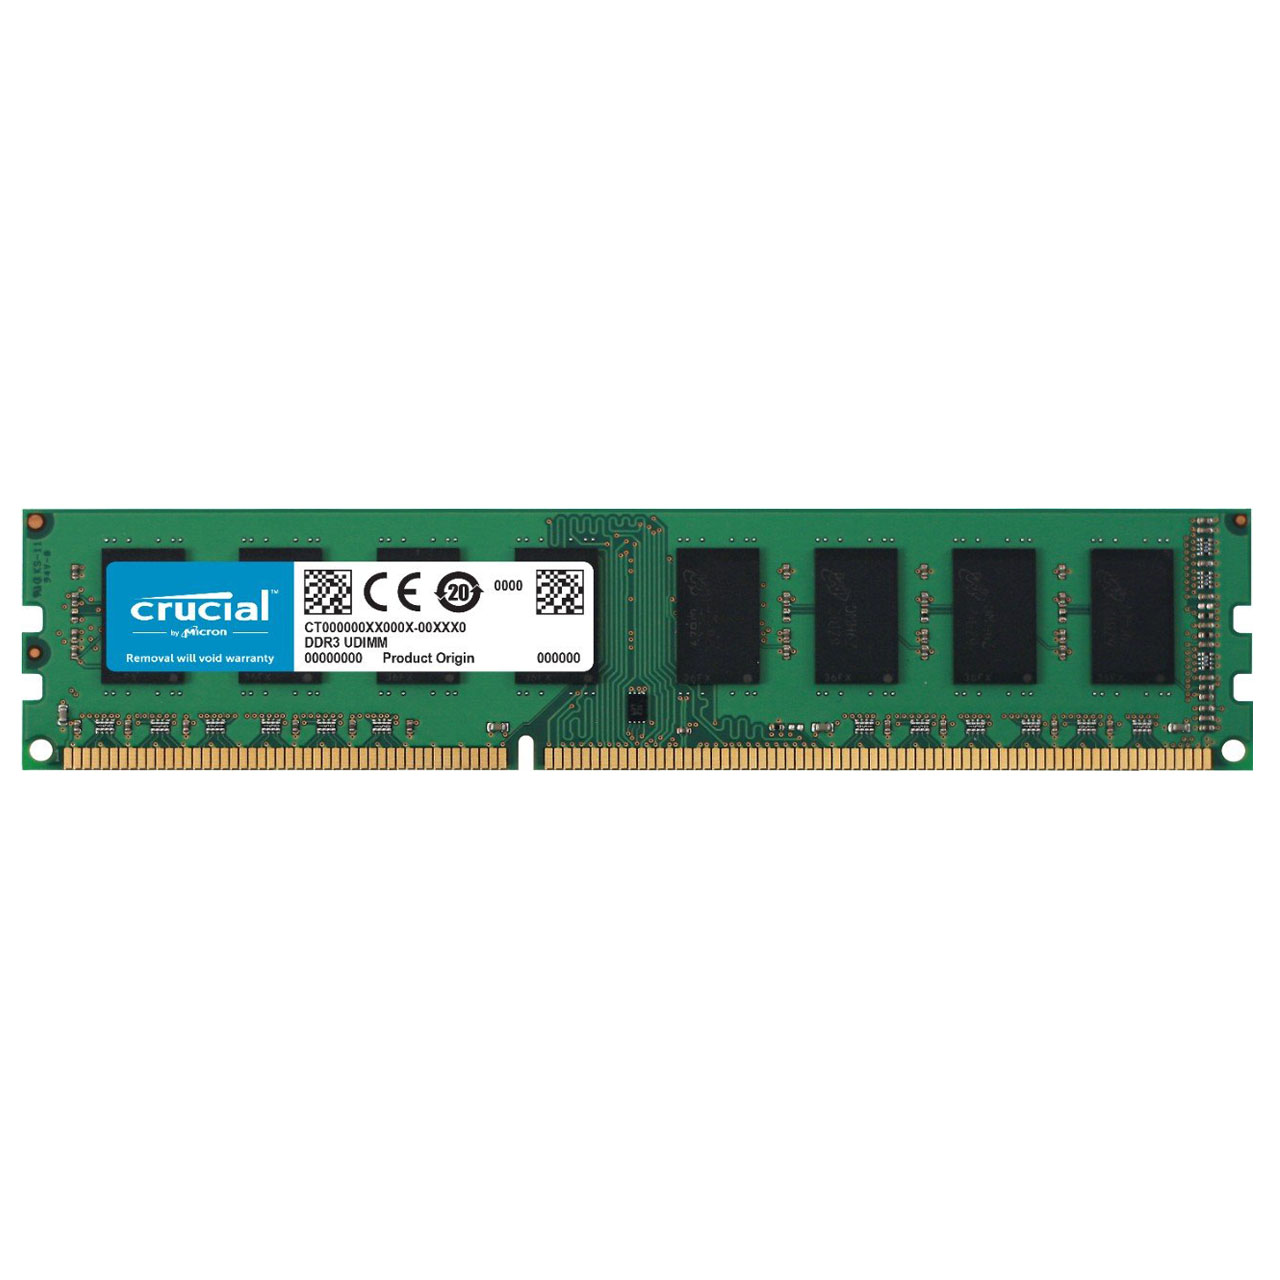 رم دستکتاپ DDR3 تک کاناله 1600 مگاهرتز CL11 کروشیال ظرفیت 8 گیگابایت